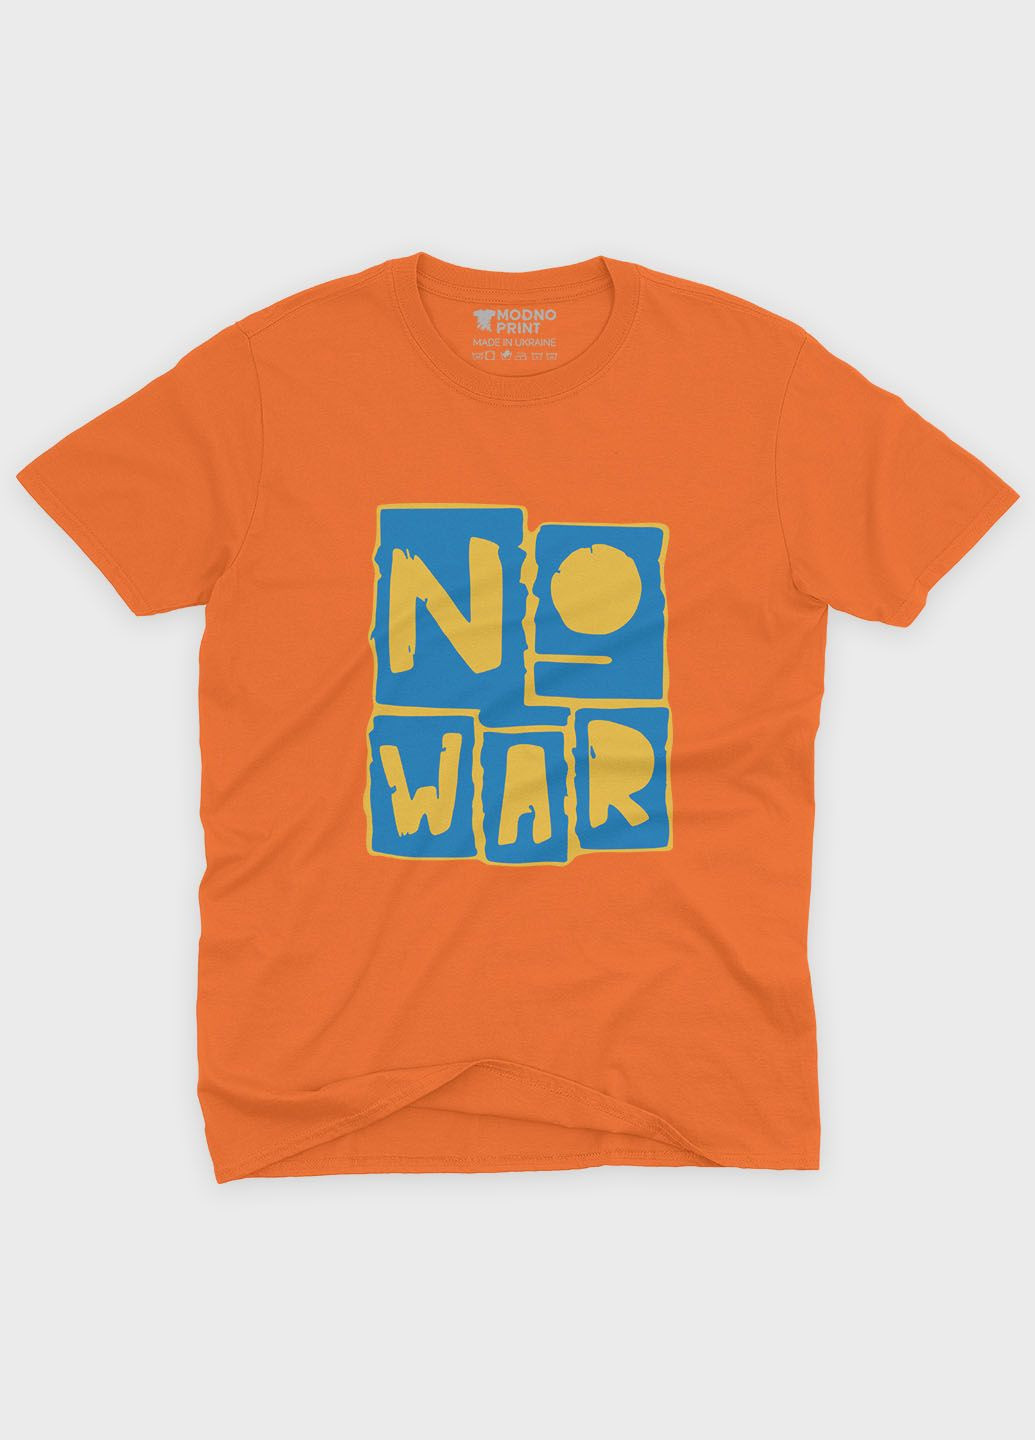 Оранжевая демисезонная футболка для мальчика с патриотическим принтом no war (ts001-5-ora-005-1-126-b) Modno